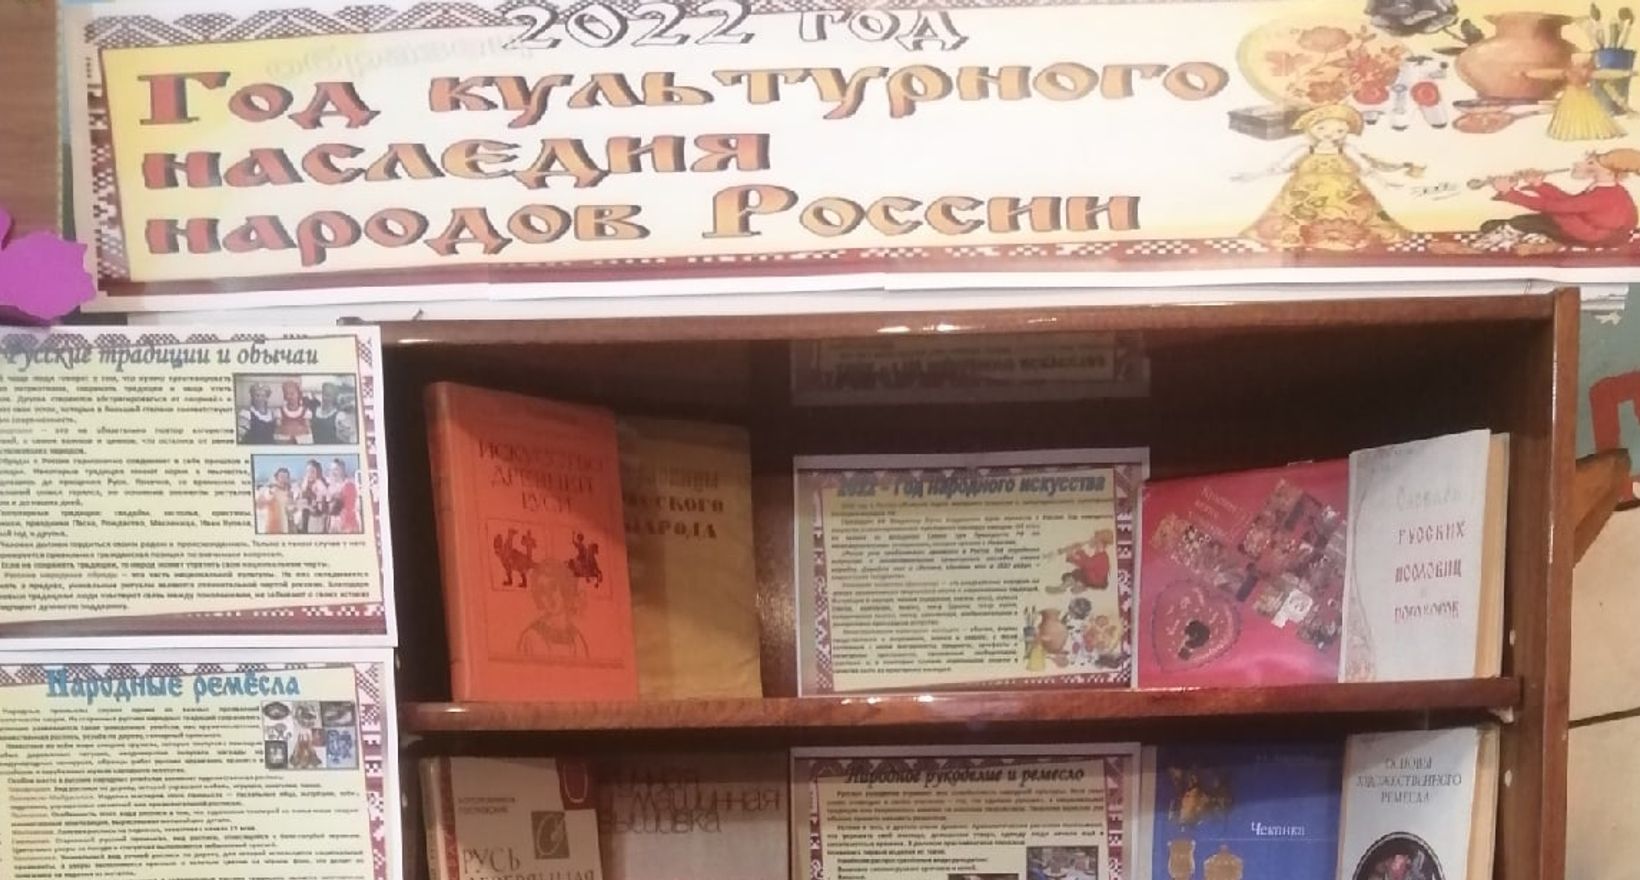 Иваньково- Ленинская сельская библиотека